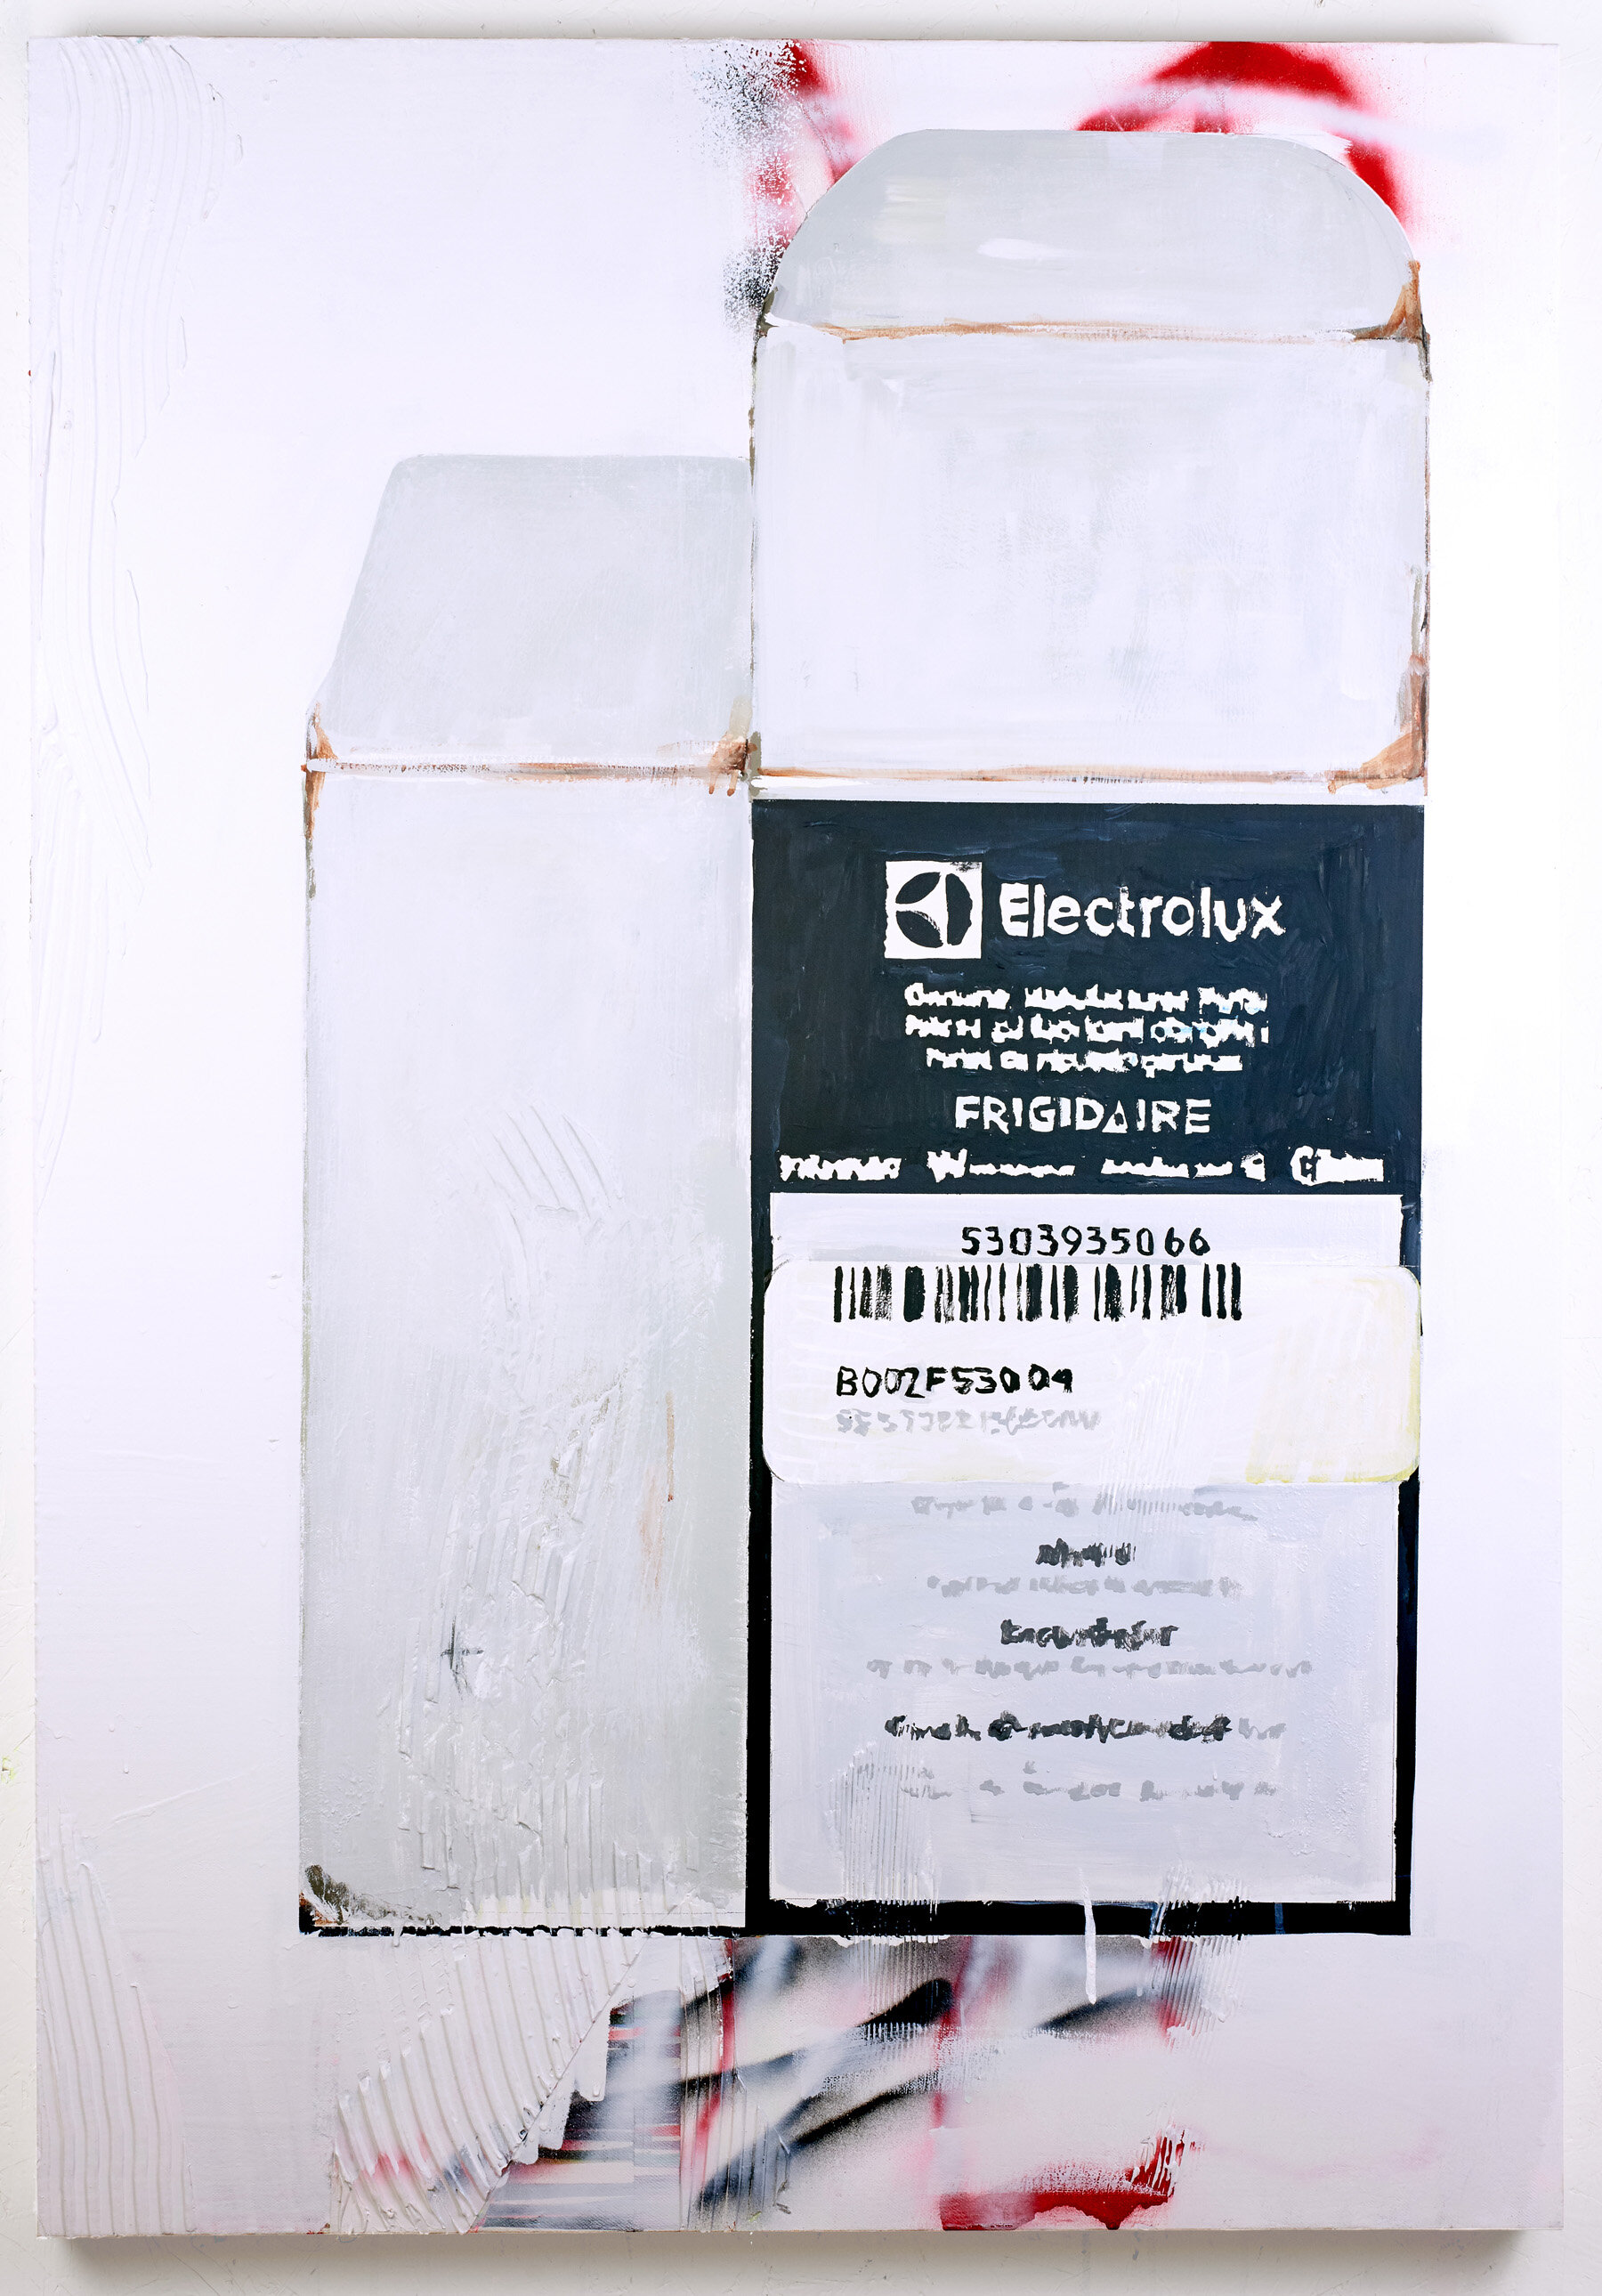    Electrolux Part Box,   2020, 32”x45”, aerosol, acrylic, plaster on canvas 